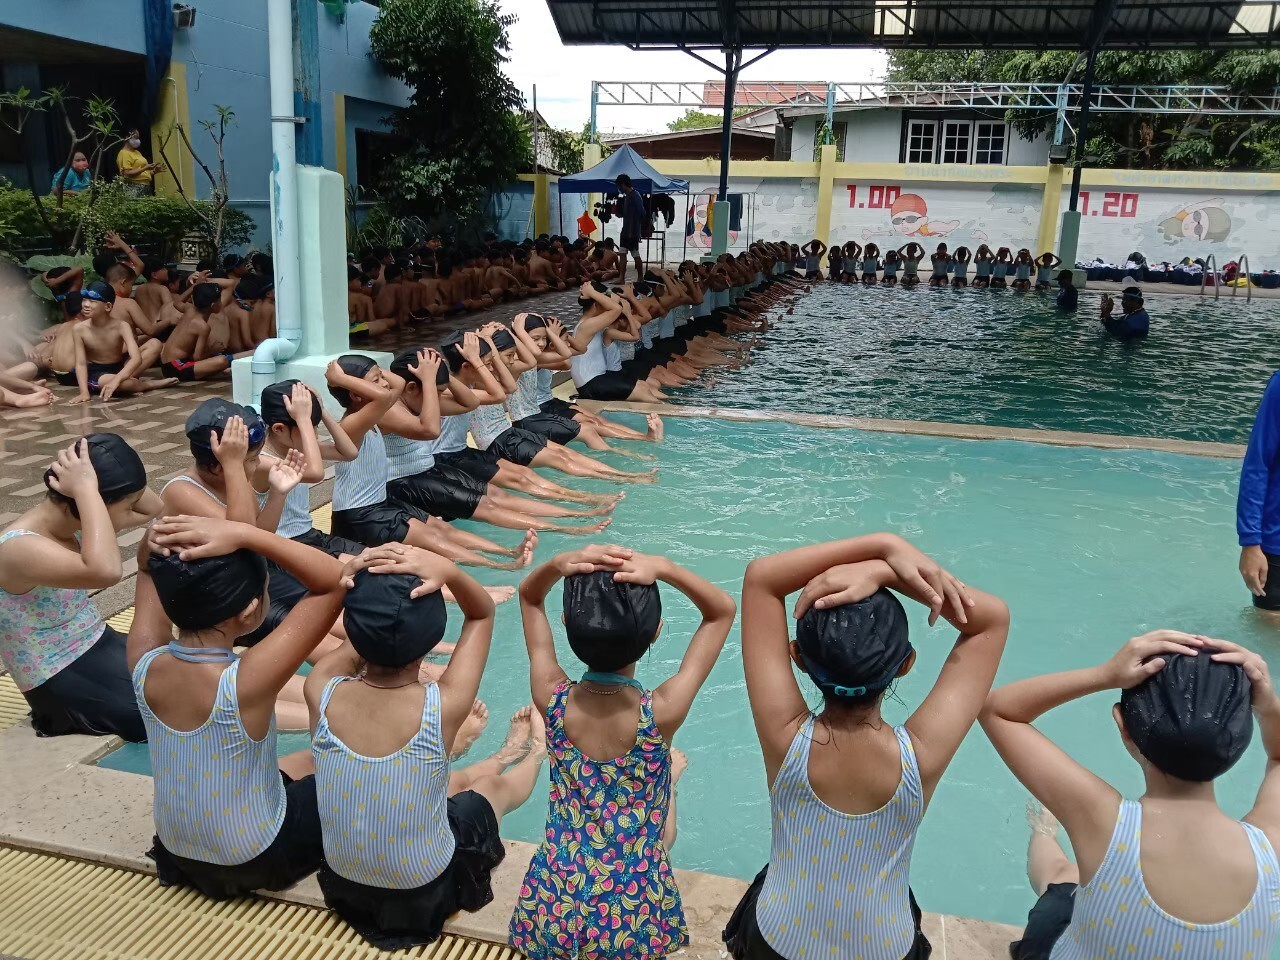 กทม.เสริมทักษะว่ายน้ำให้เด็กนักเรียน เพิ่มทักษะเอาชีวิตรอดจากภัยทางน้ำ